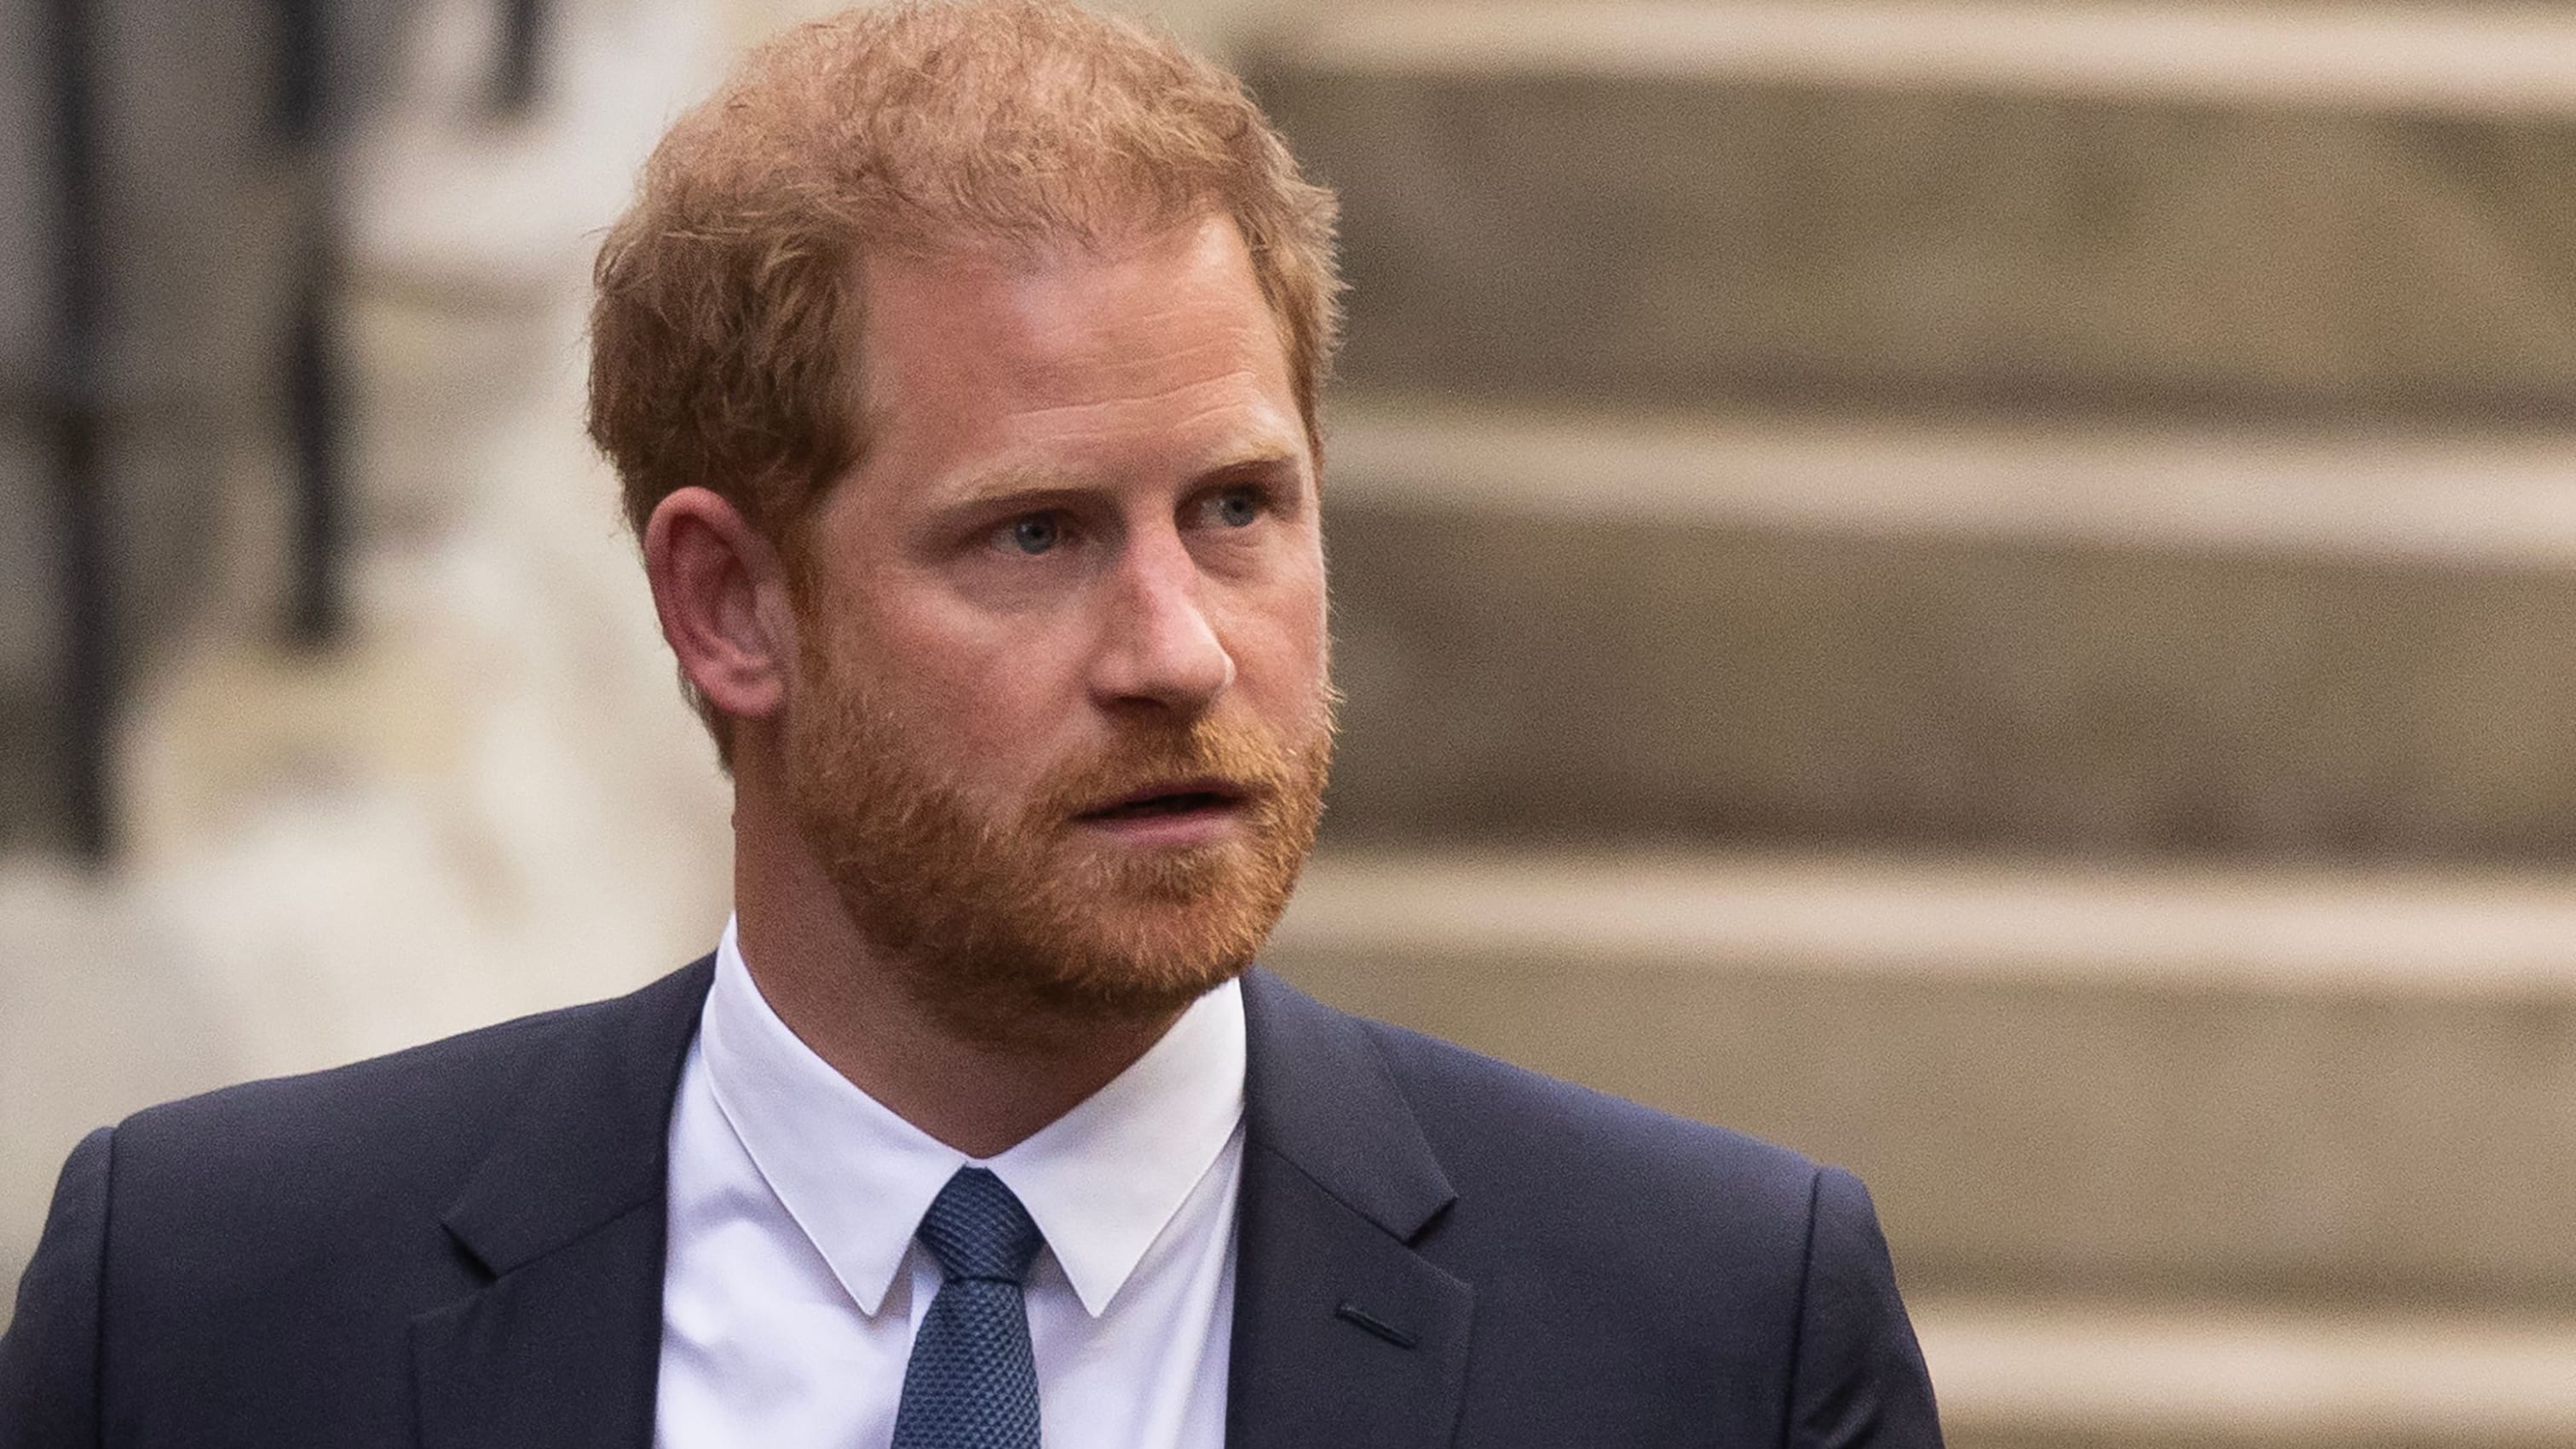 Royals: Palast macht Ankündigung – weitere Spitze gegen Prinz Harry?